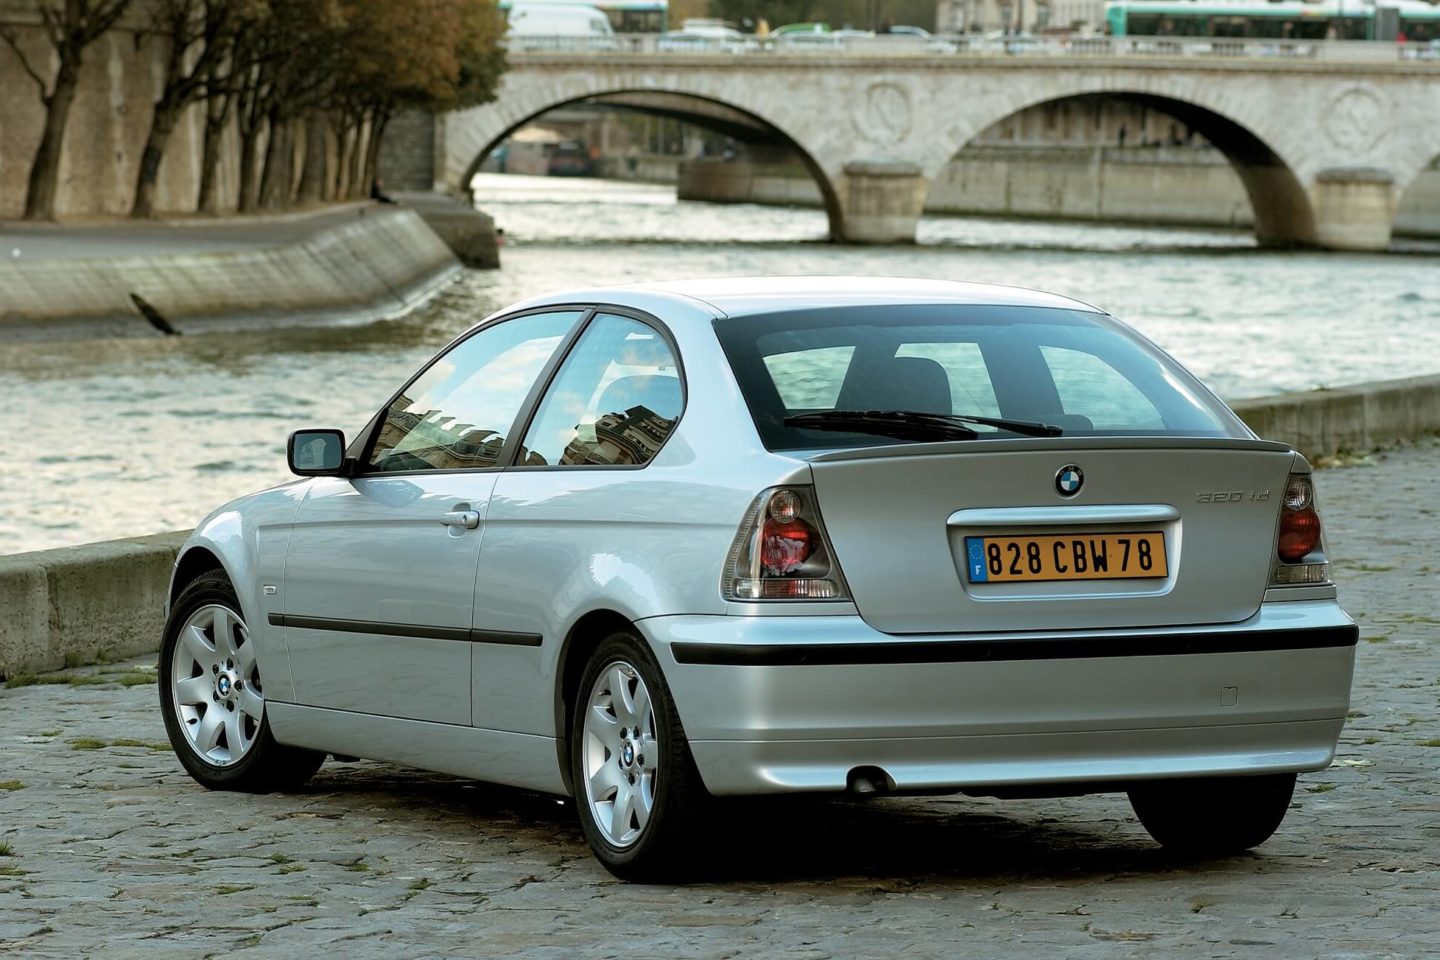 BMW Série 3 Compact